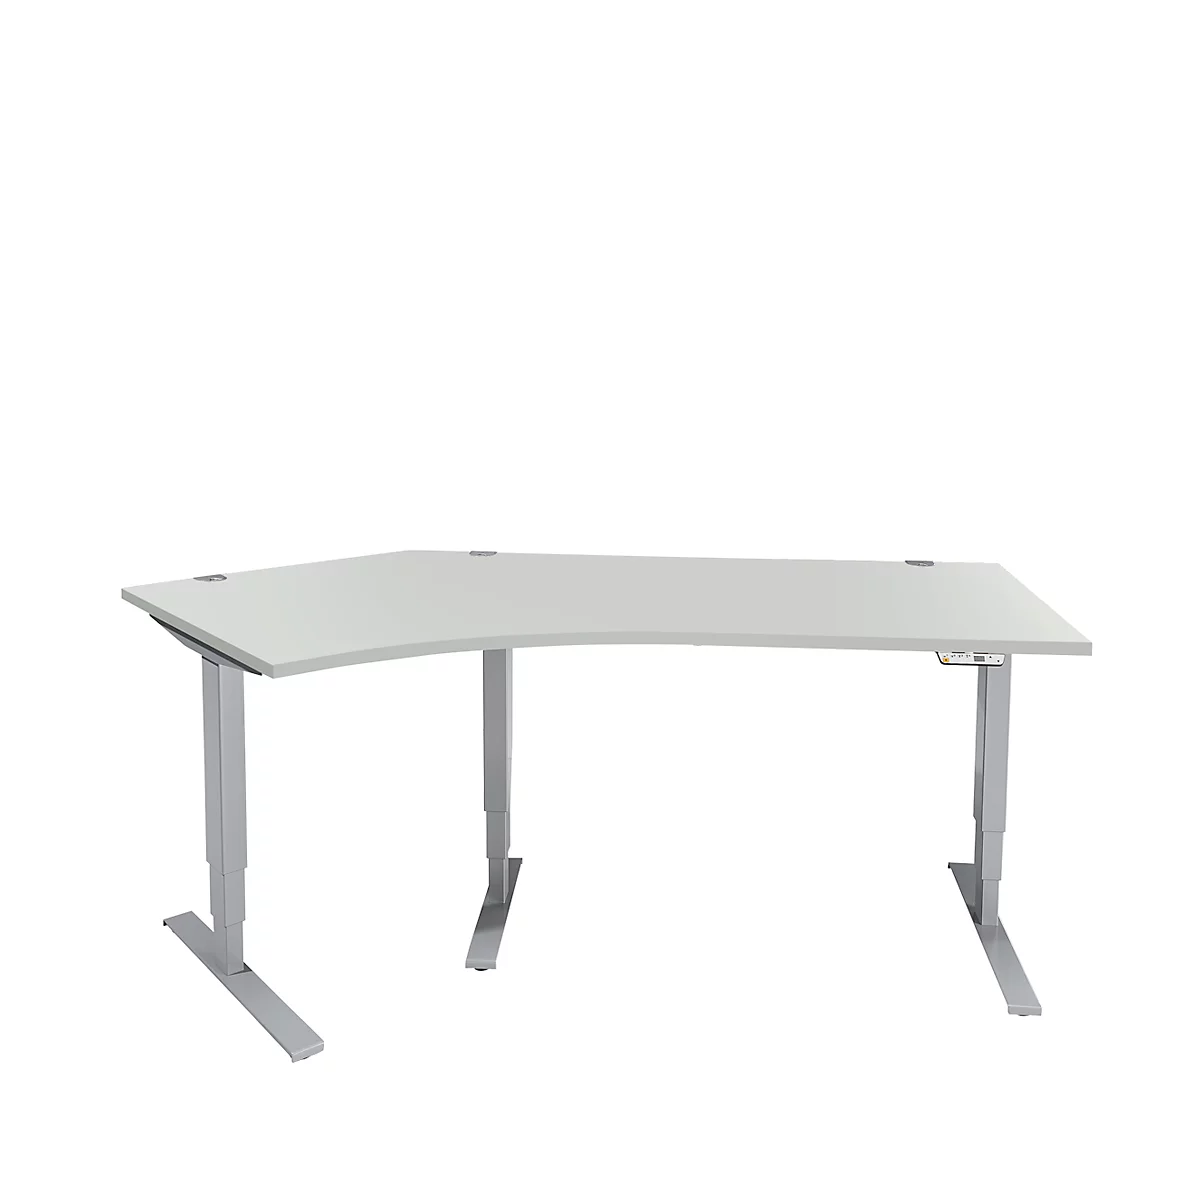 Schäfer Shop Genius AERO FLEX escritorio angular, regulable eléctricamente en altura, ángulo de 135° a la izquierda, anchura 2165 mm, aluminio gris claro/blanco + panel de memoria